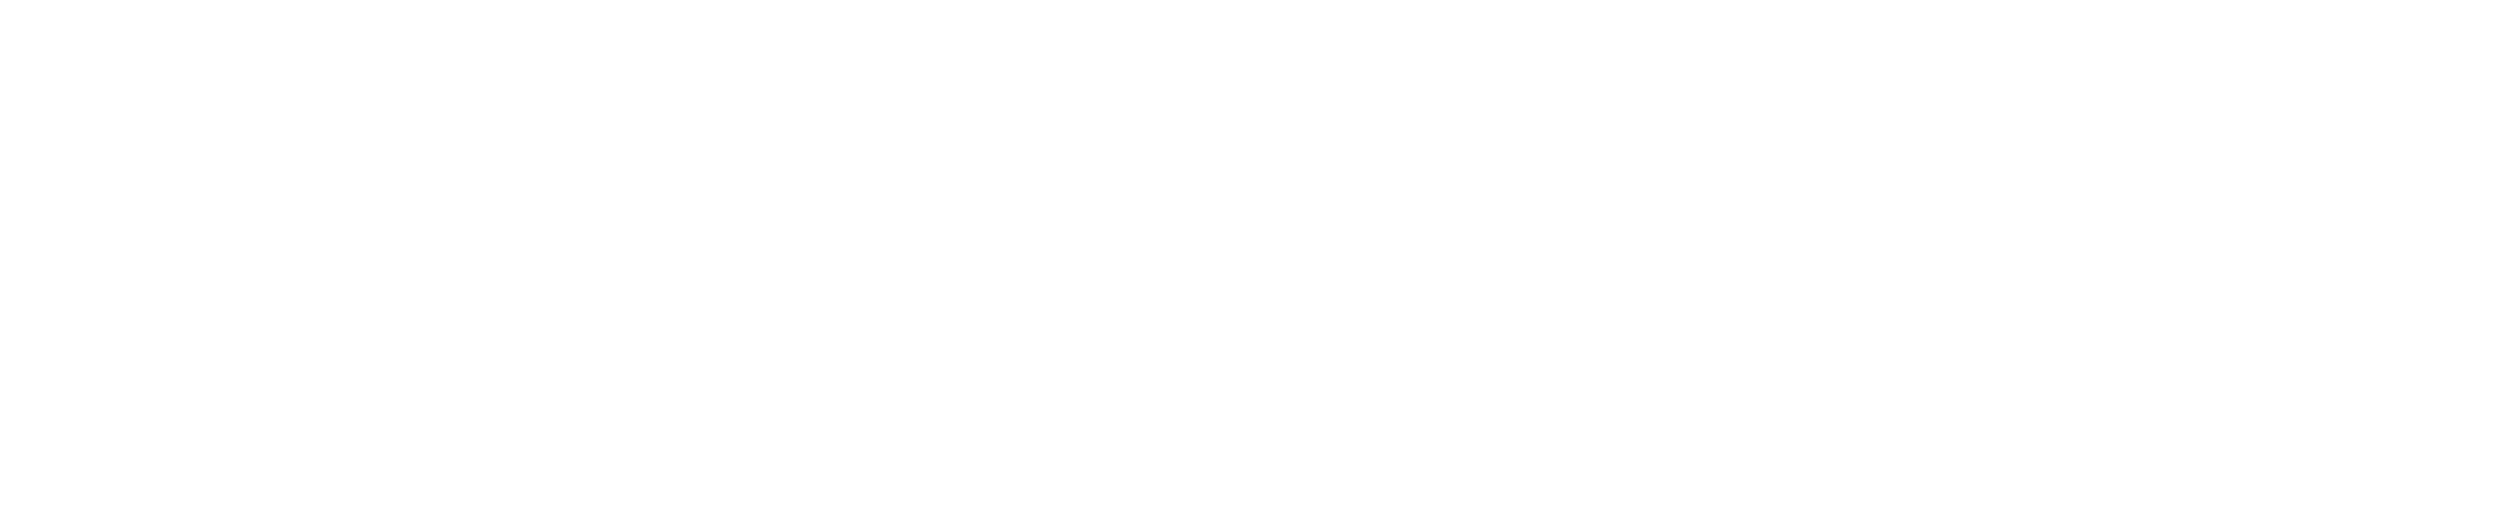 konoisseur logo baseline createurs d'experiences liquides